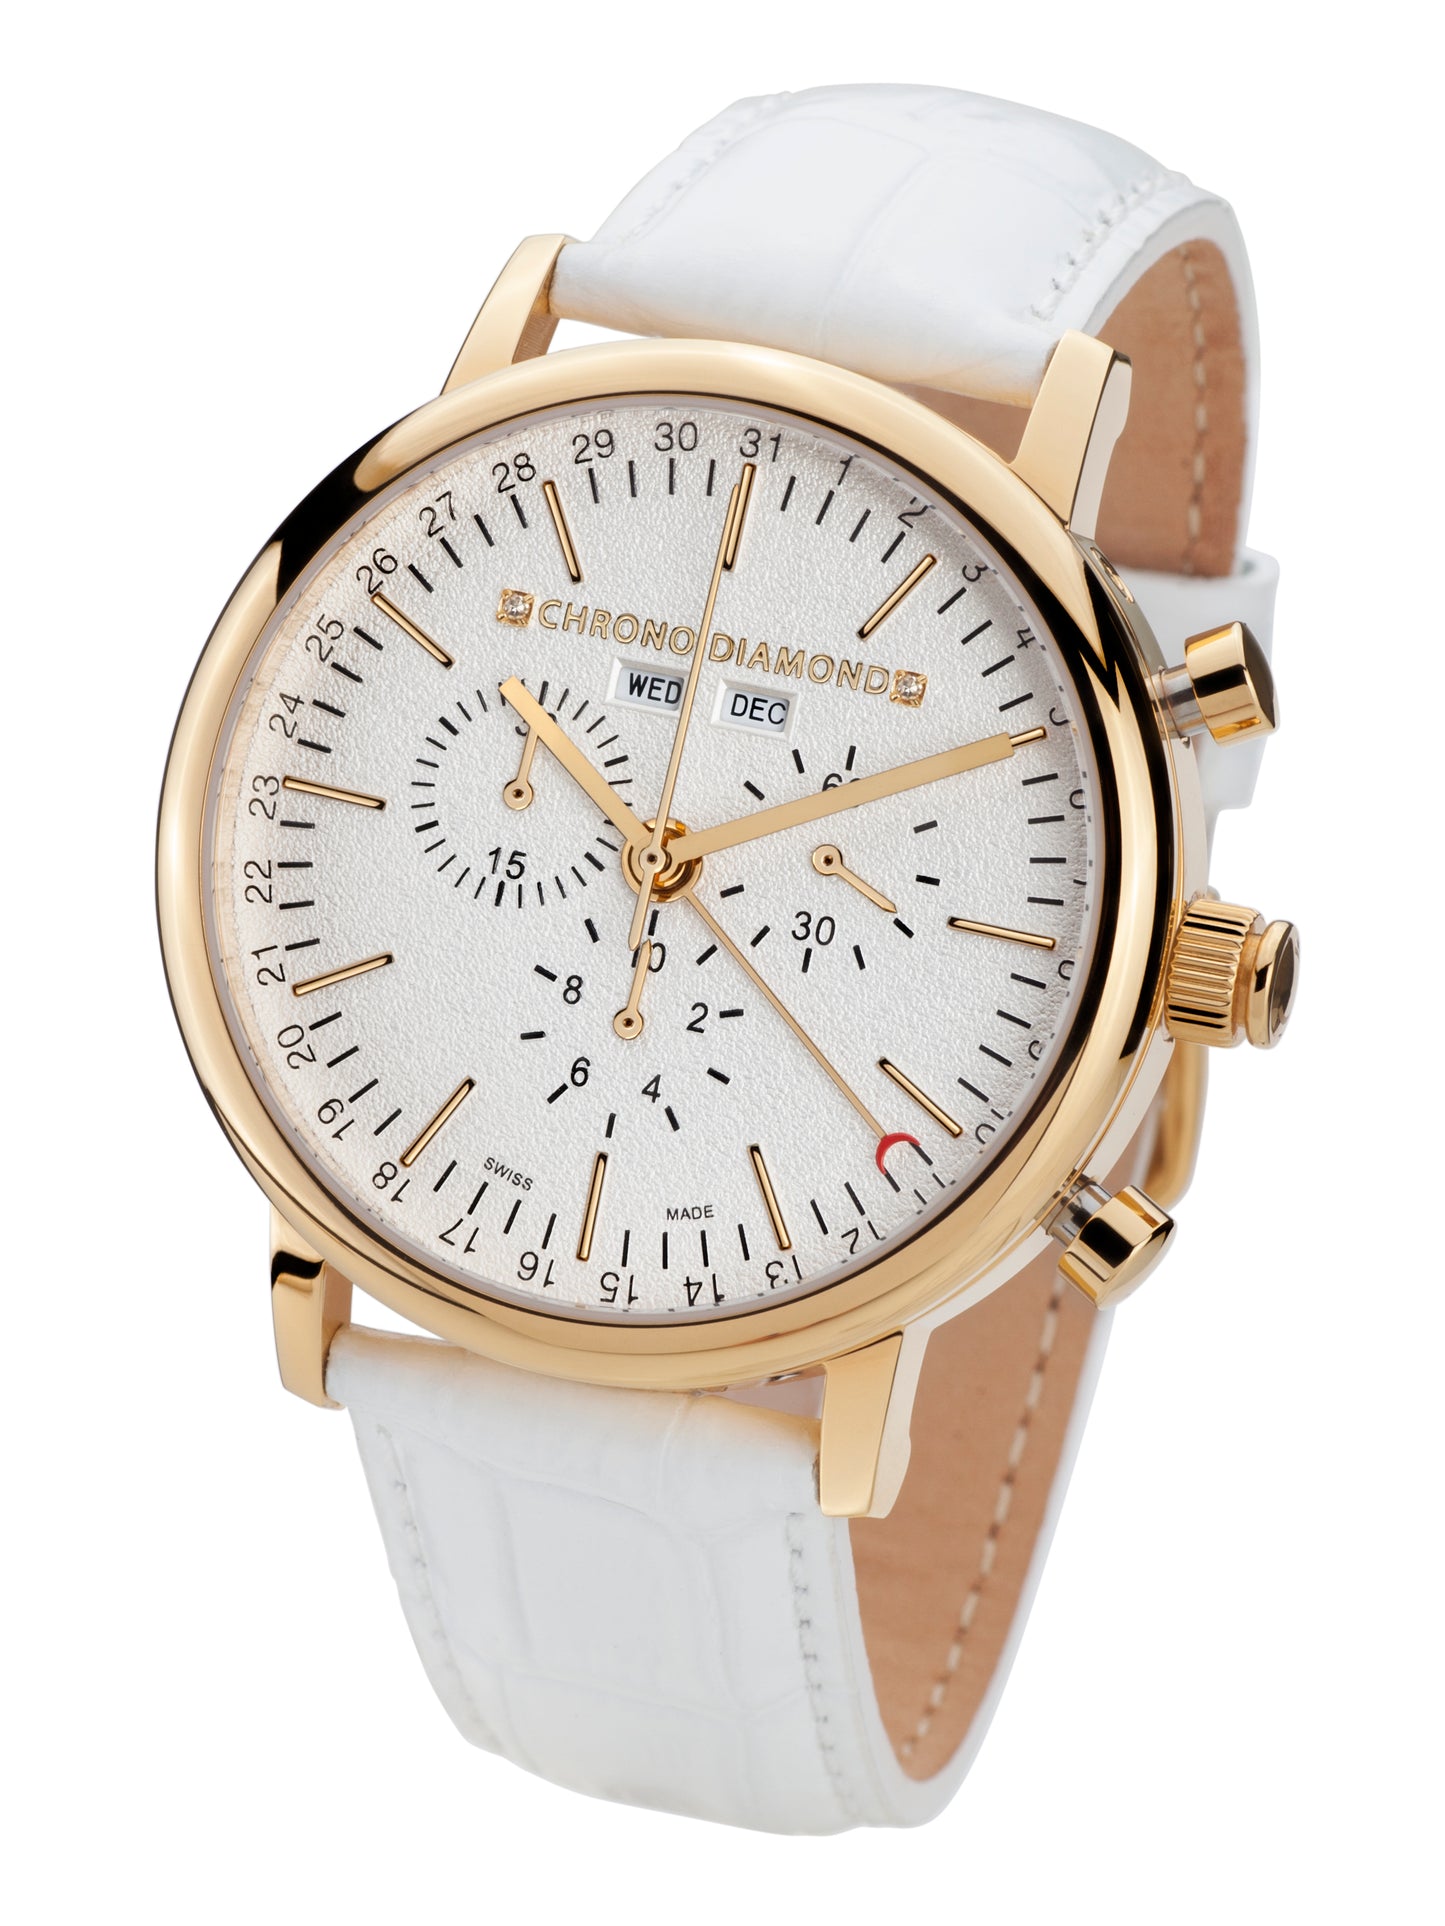 Automatic watches — Argos — Chrono Diamond — gold IP